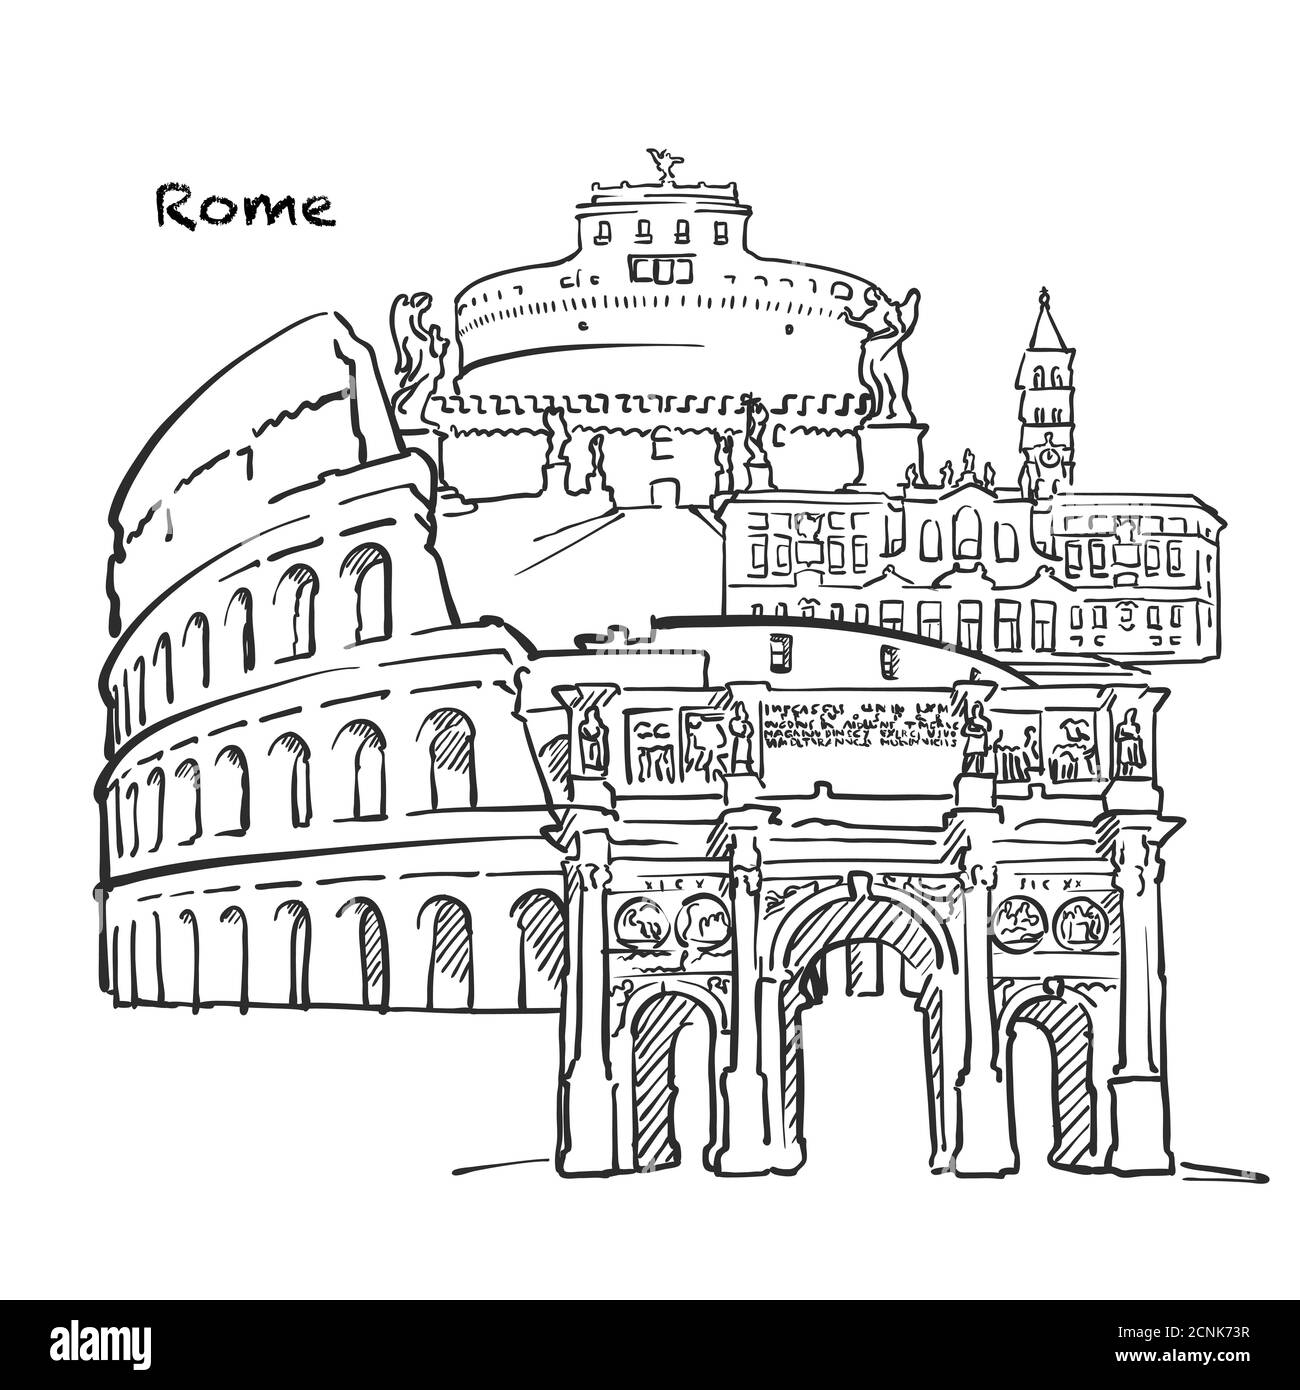 Famosi edifici di Roma, composizione italiana. Illustrazione vettoriale in bianco e nero disegnata a mano. Oggetti raggruppati e mobili. Illustrazione Vettoriale